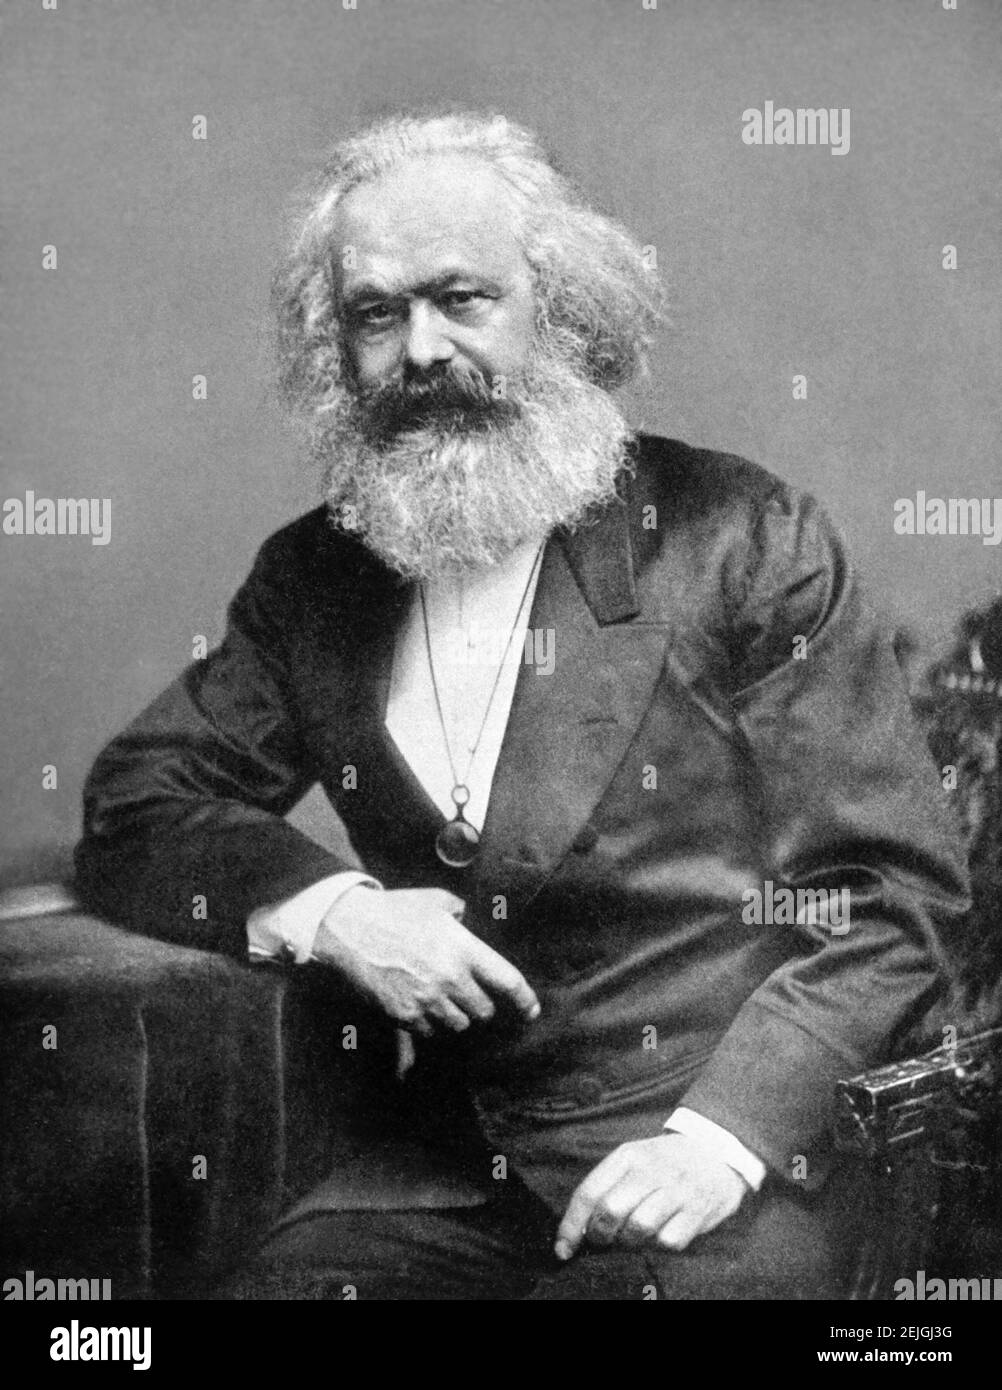 Karl Marx. Portrait du philosophe, économiste et écrivain socialiste d'origine allemande, Karl Heinrich Marx (1818-1883), 1875 Banque D'Images